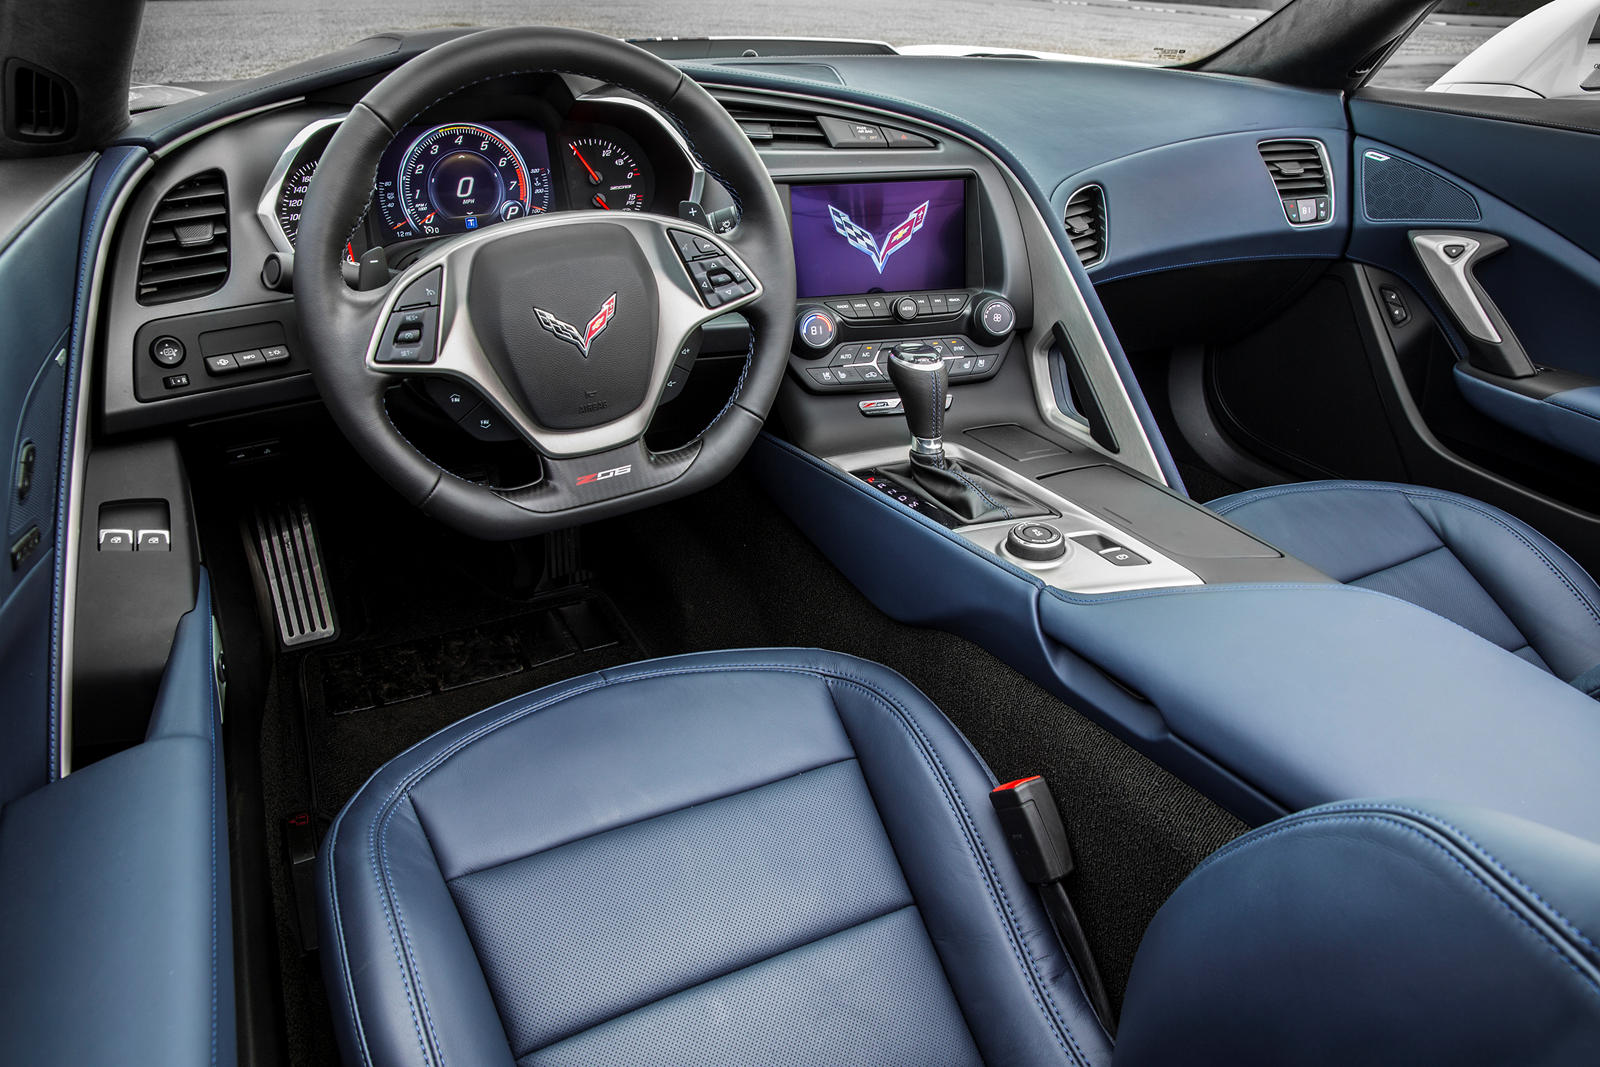 2016 Chevrolet Corvette Z06 Coupe Dashboard